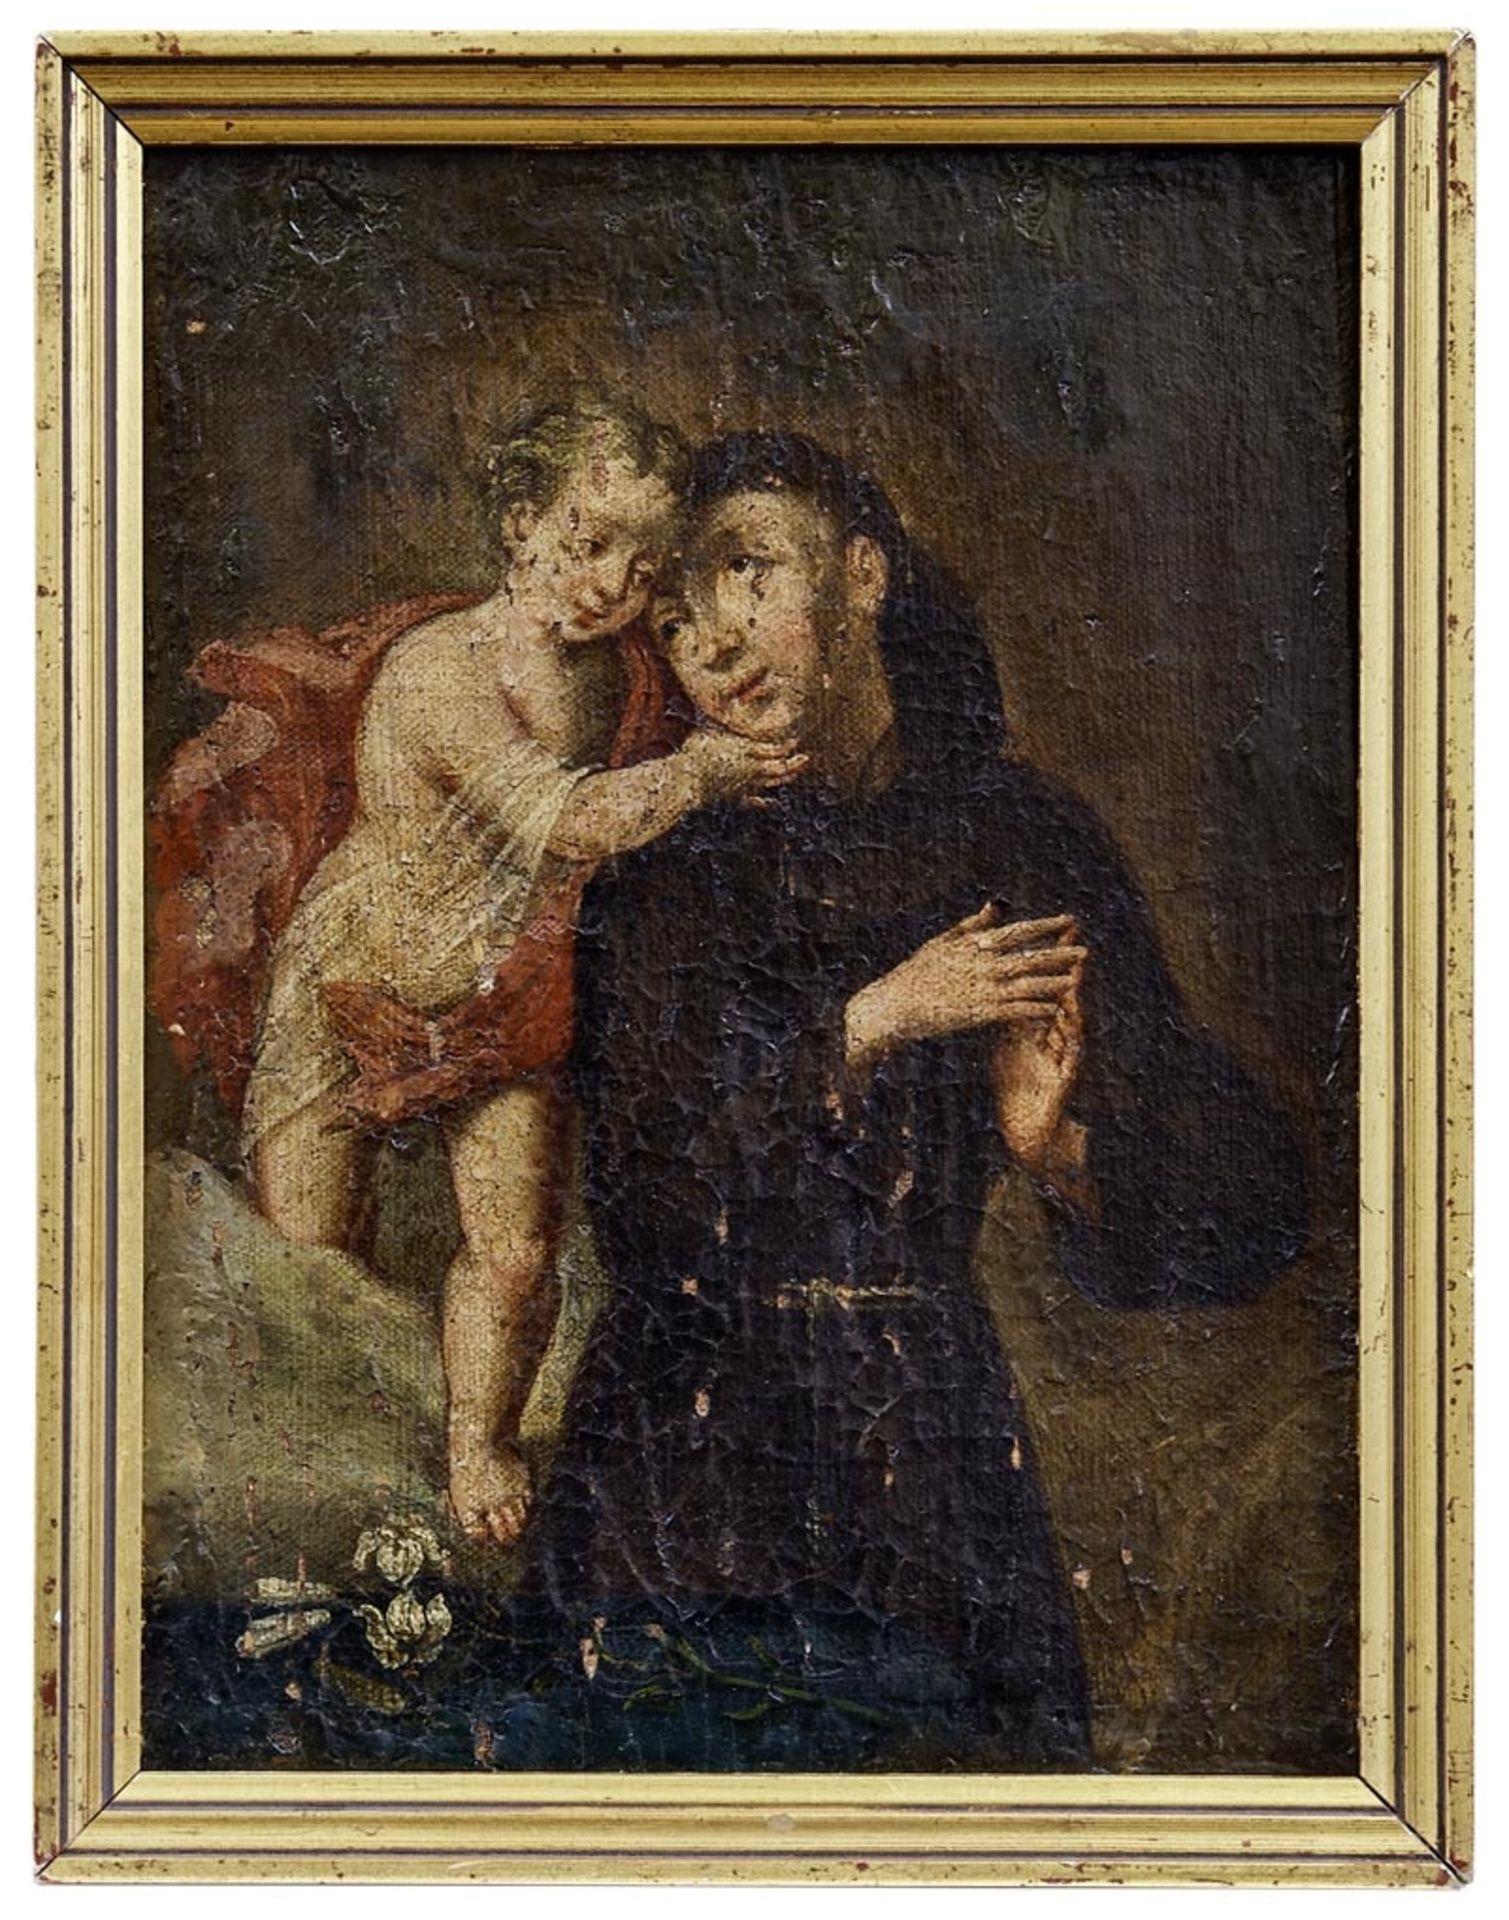 Der heilige Antonius von Padua mit dem Jesusknaben, Italien, 18. Jh.